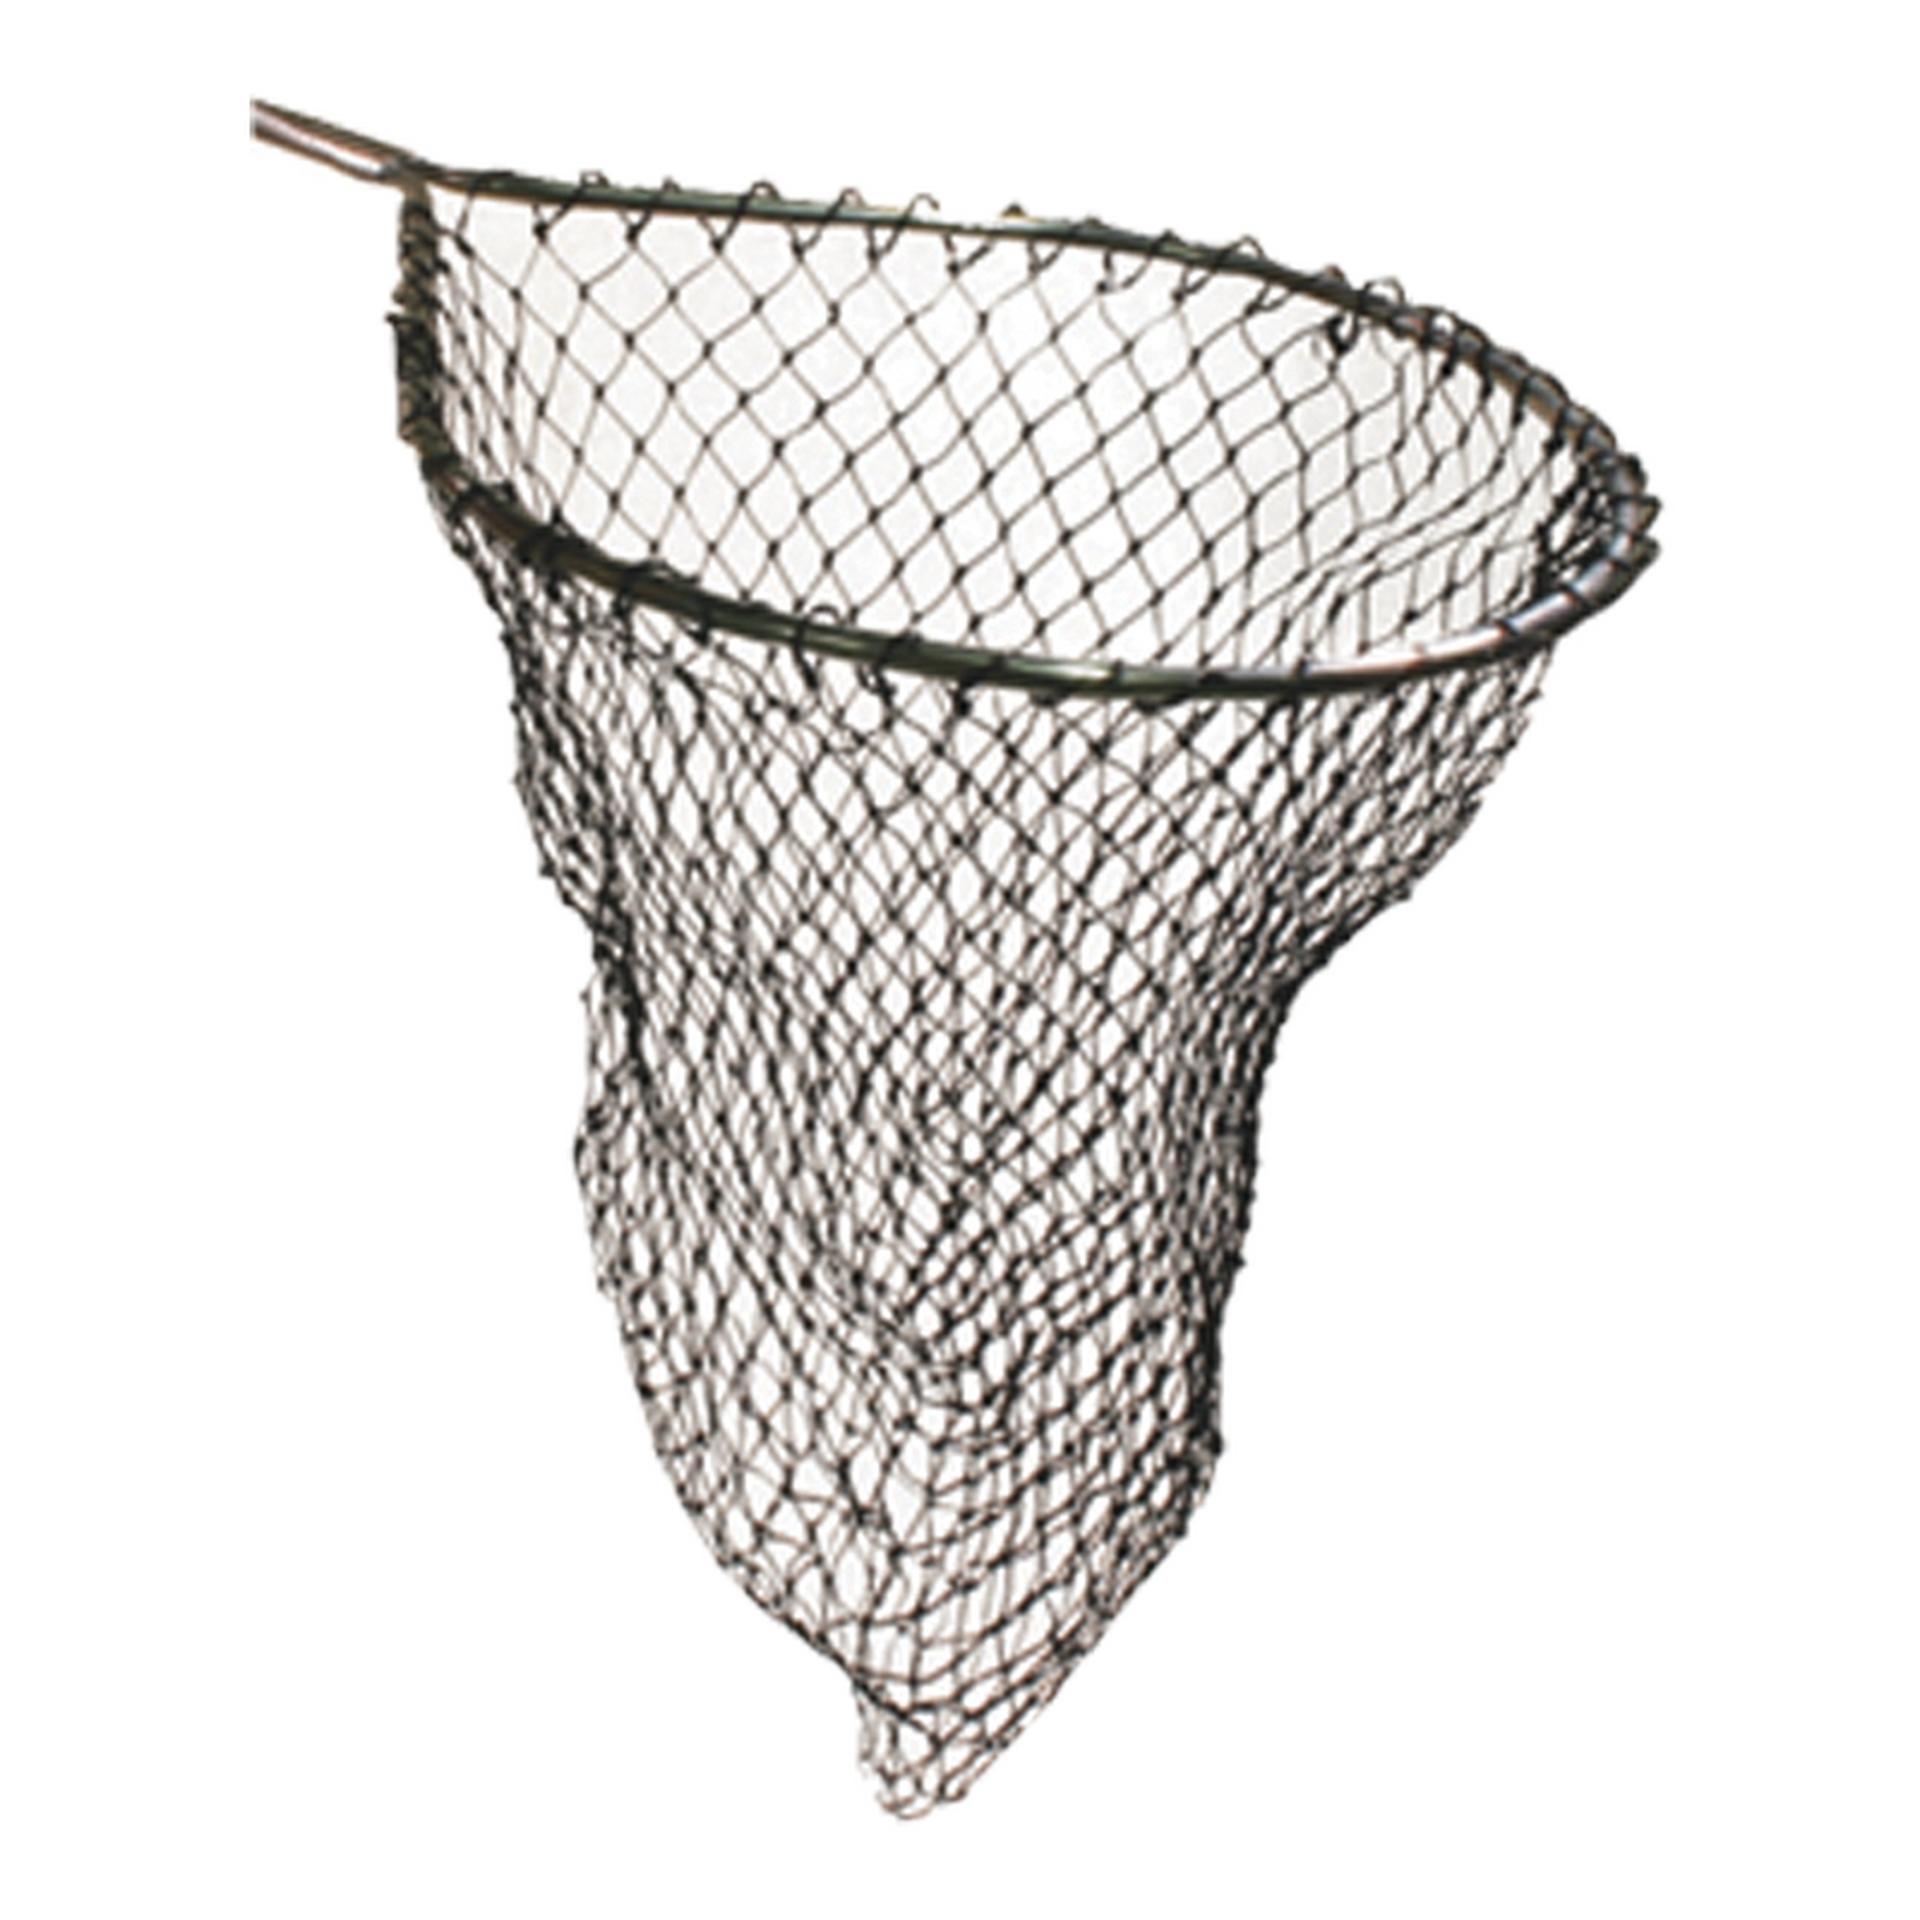 Frabill Teardrop Floating Trout Net